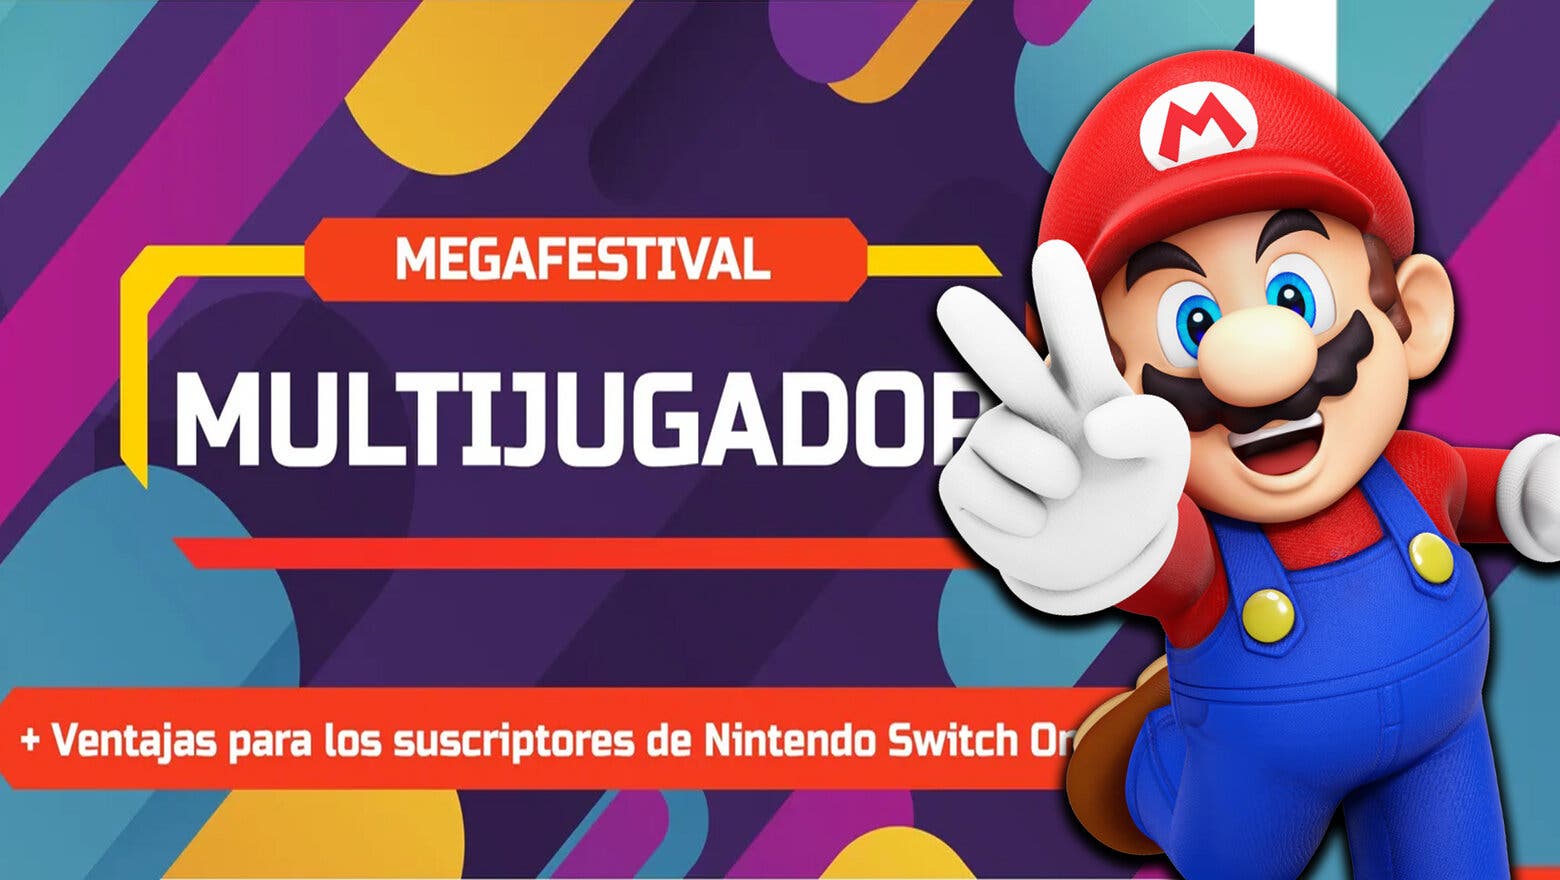 Nintendo arranca el 'Megafestival Multijugador': Puntos de oro adicionales, juegos GRATIS y mucho más